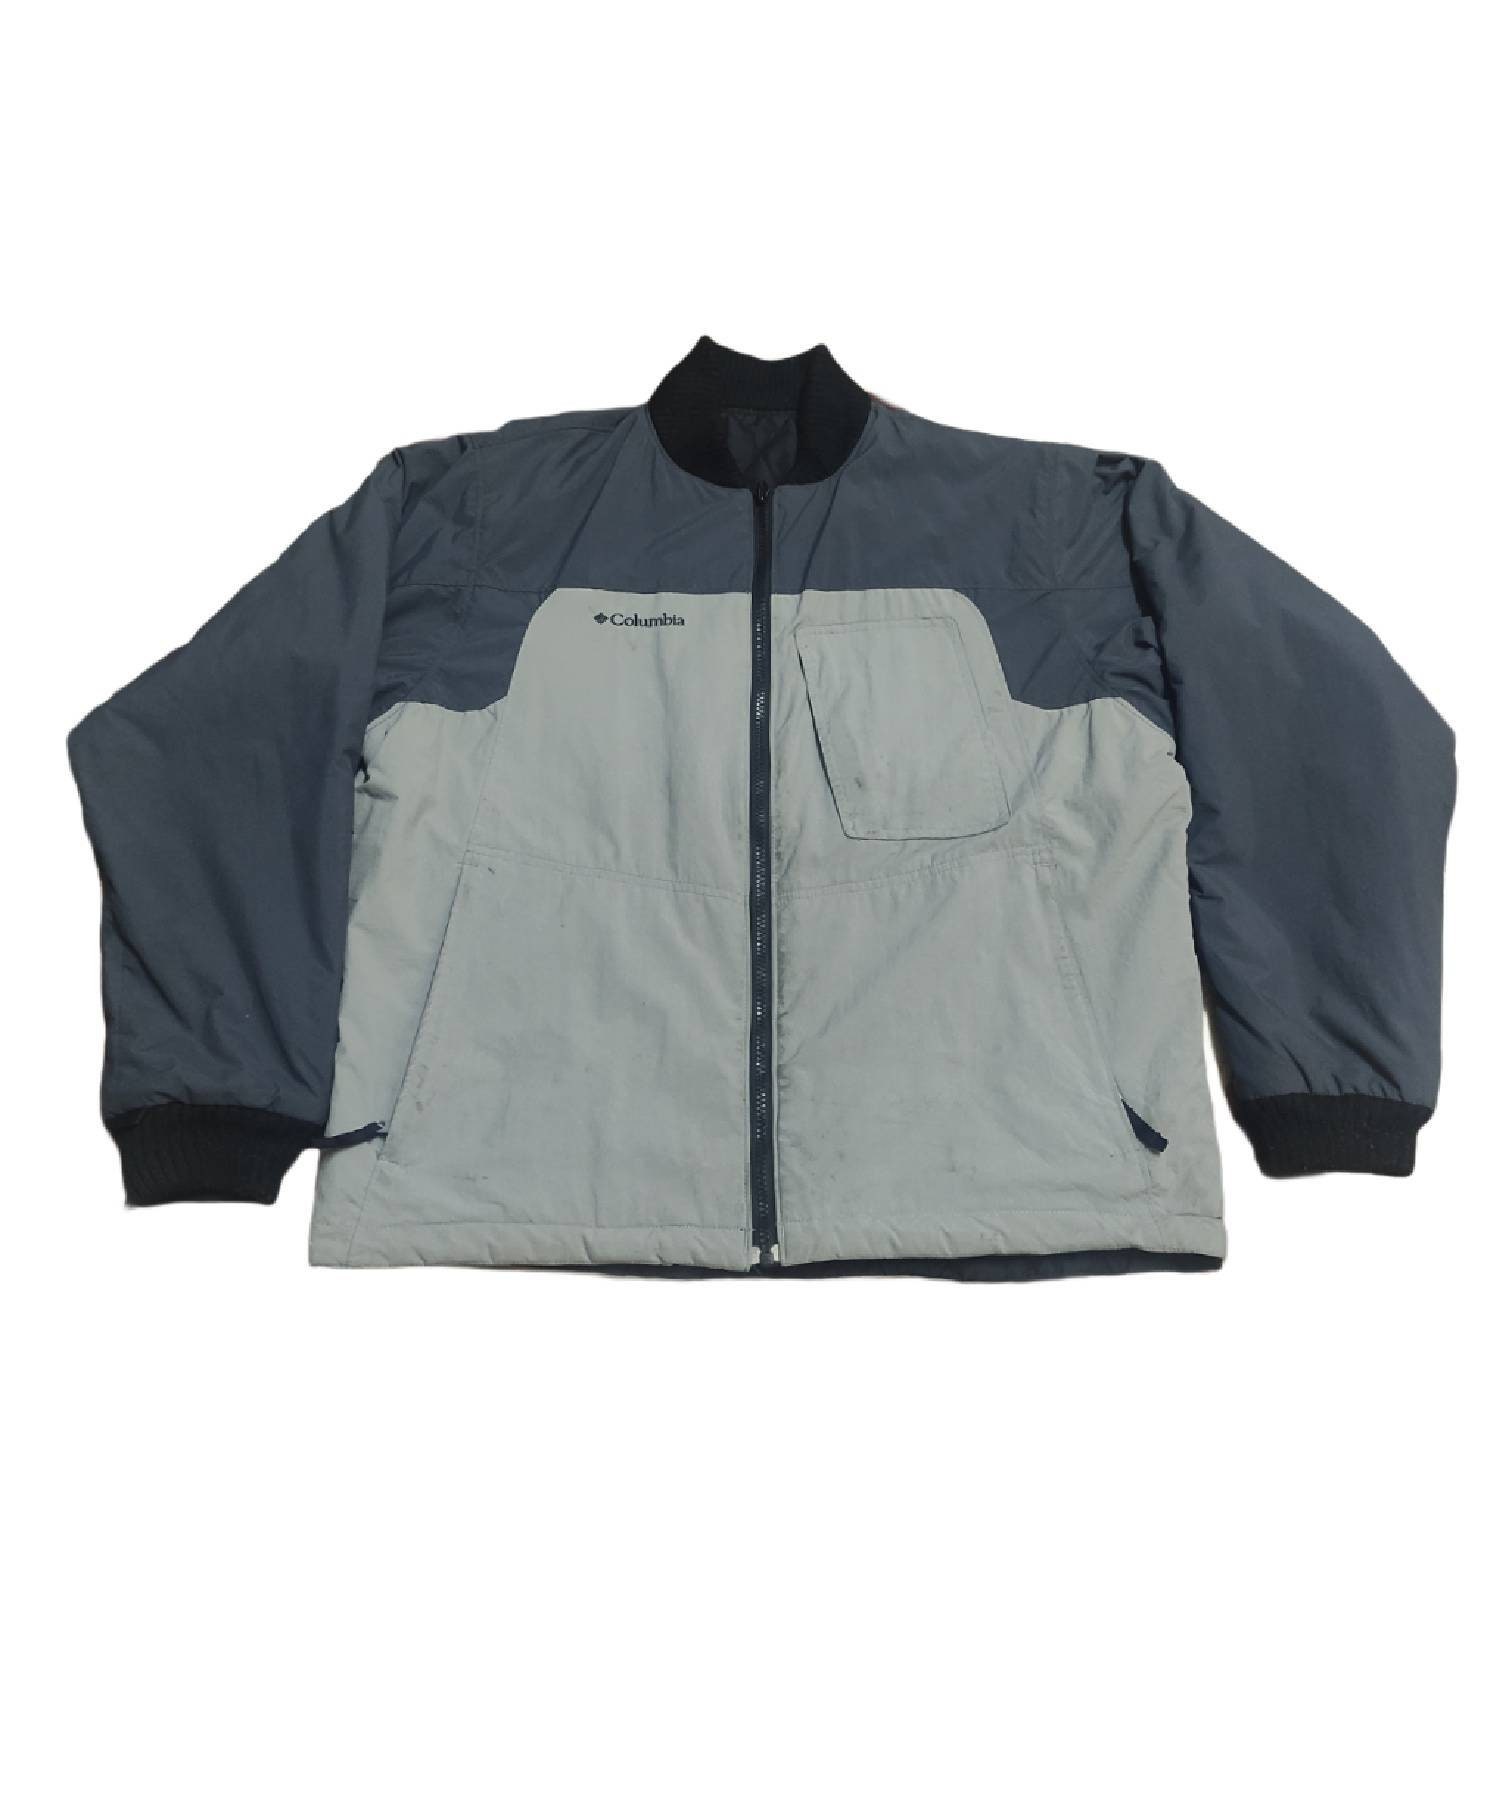 Columbia zipper Jacket with pocket Medium men size | Etsy